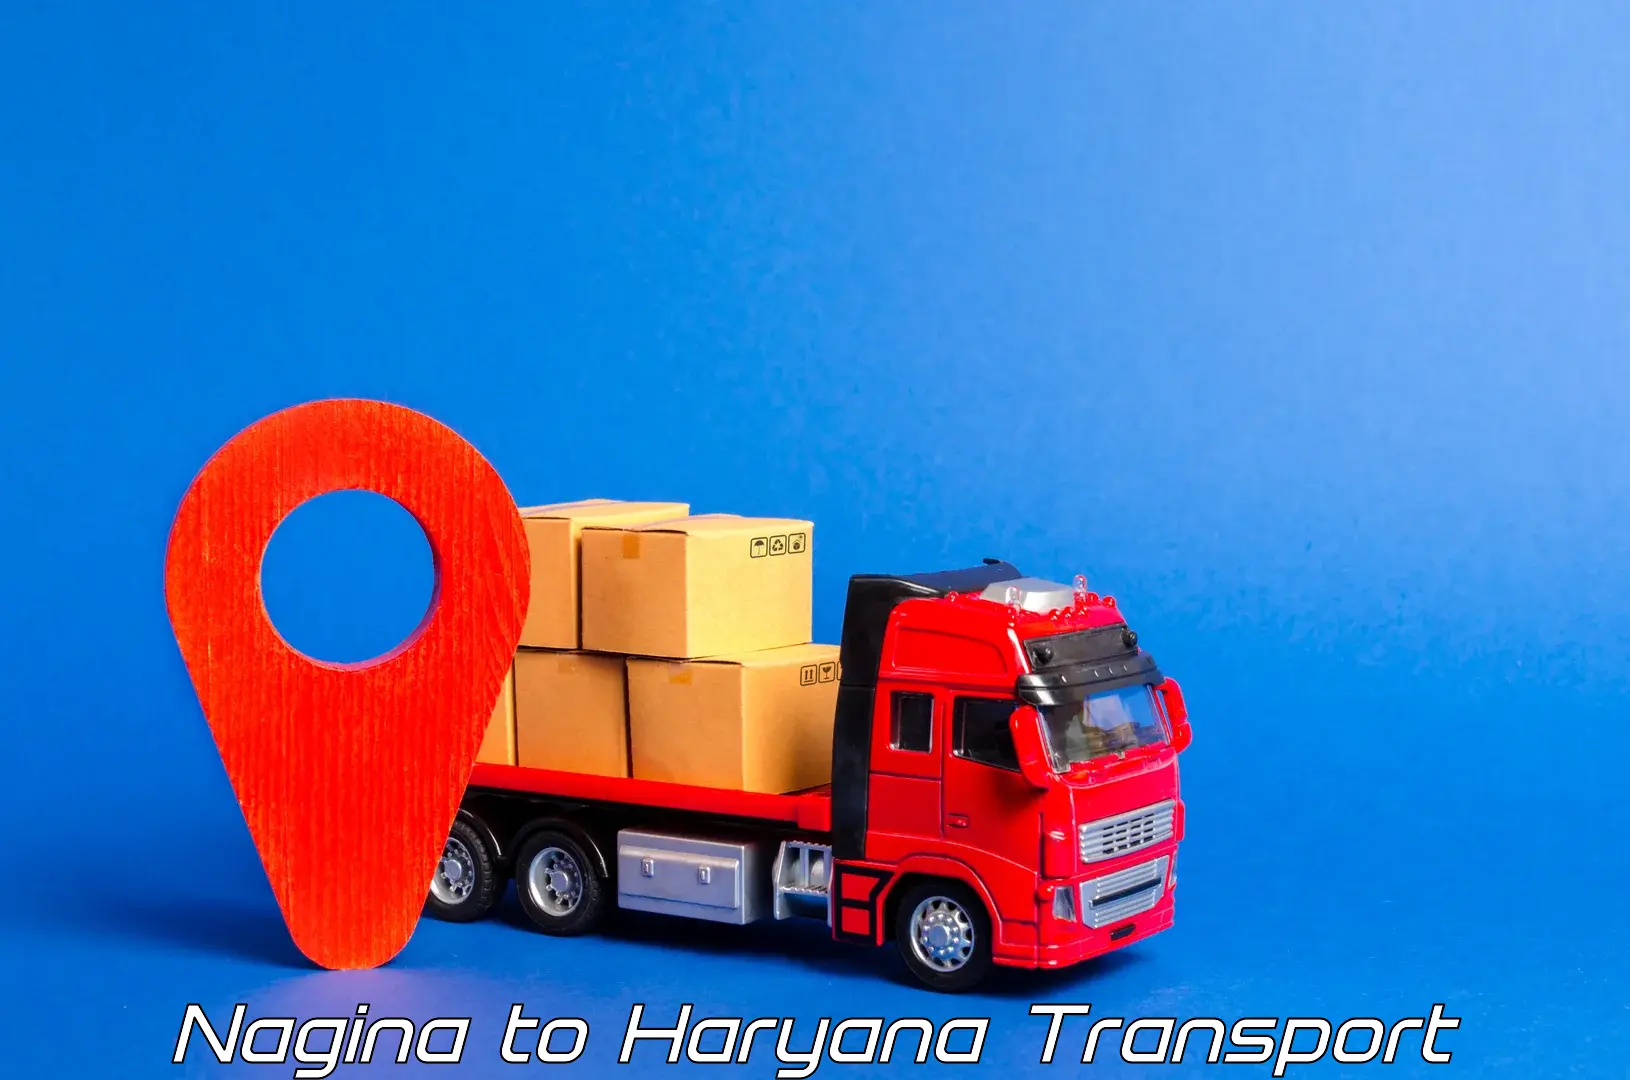 Furniture transport service Nagina to Odhan